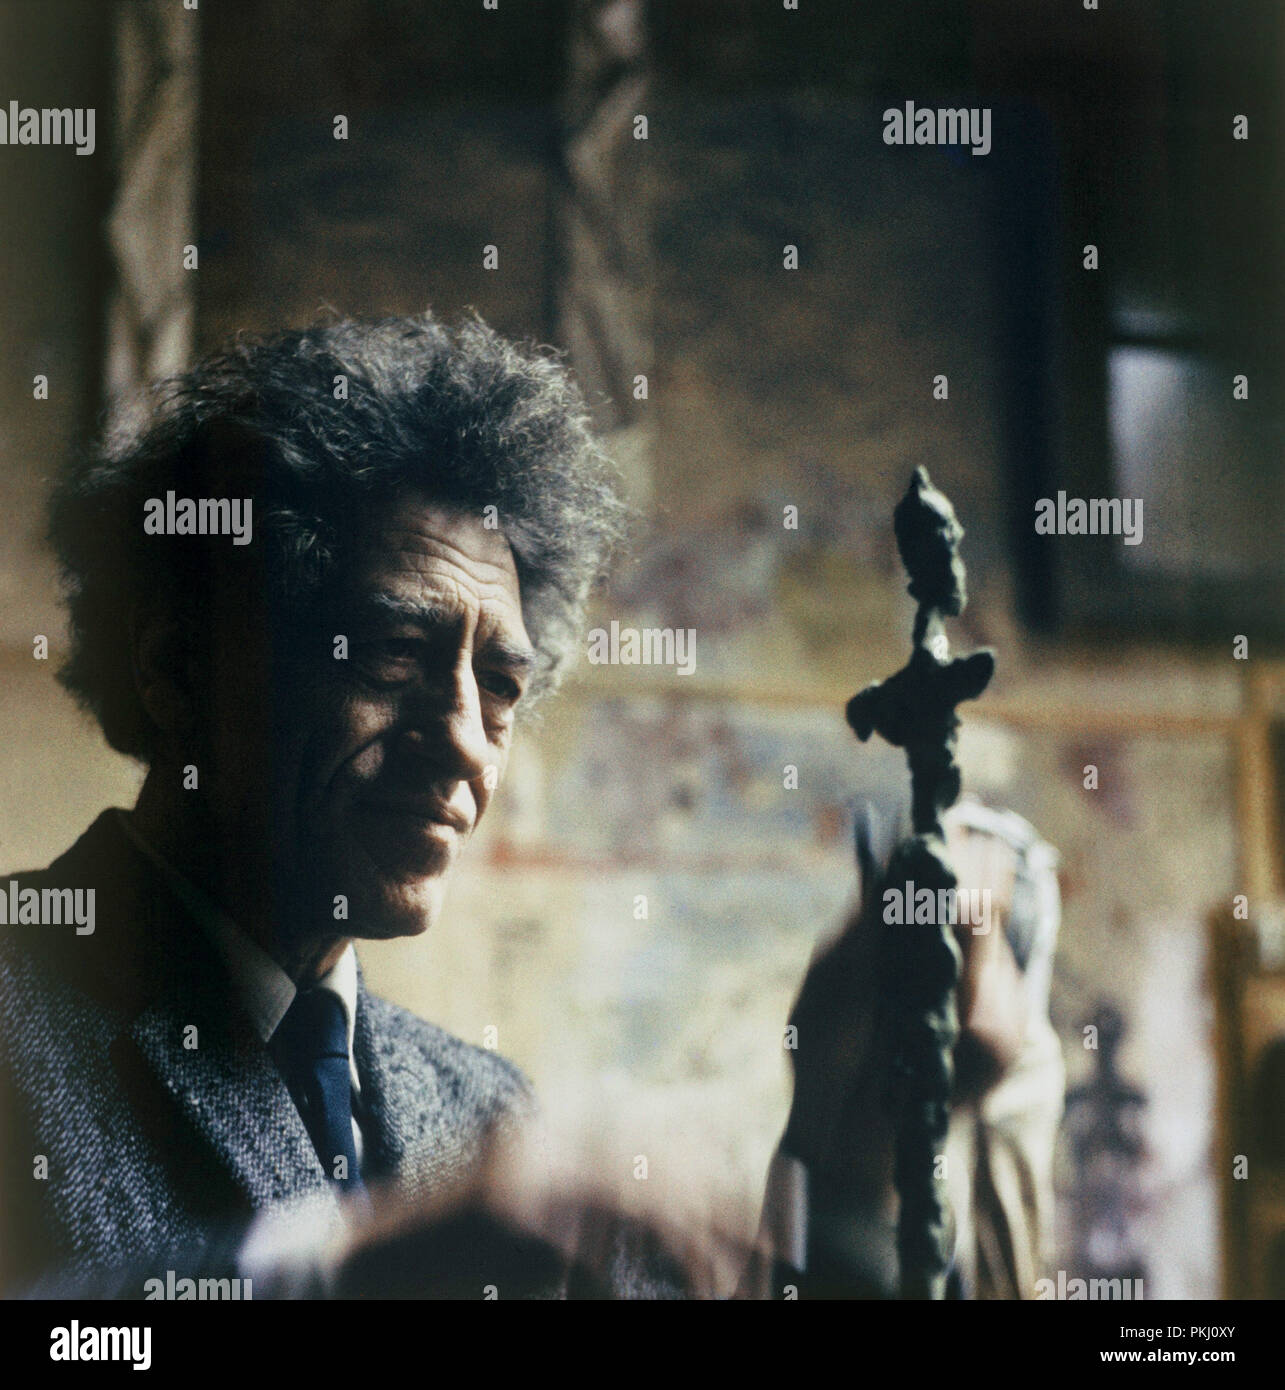 Alberto Giacometti, Schweizer Bildhauer, Maler und Grafiker, in seinem  Atelier in Paris, Frankreich 1962. Swiss sculptor, painter and graphic  artist Alberto Giacometti at his studio in Paris, France 1962 Stock Photo -  Alamy